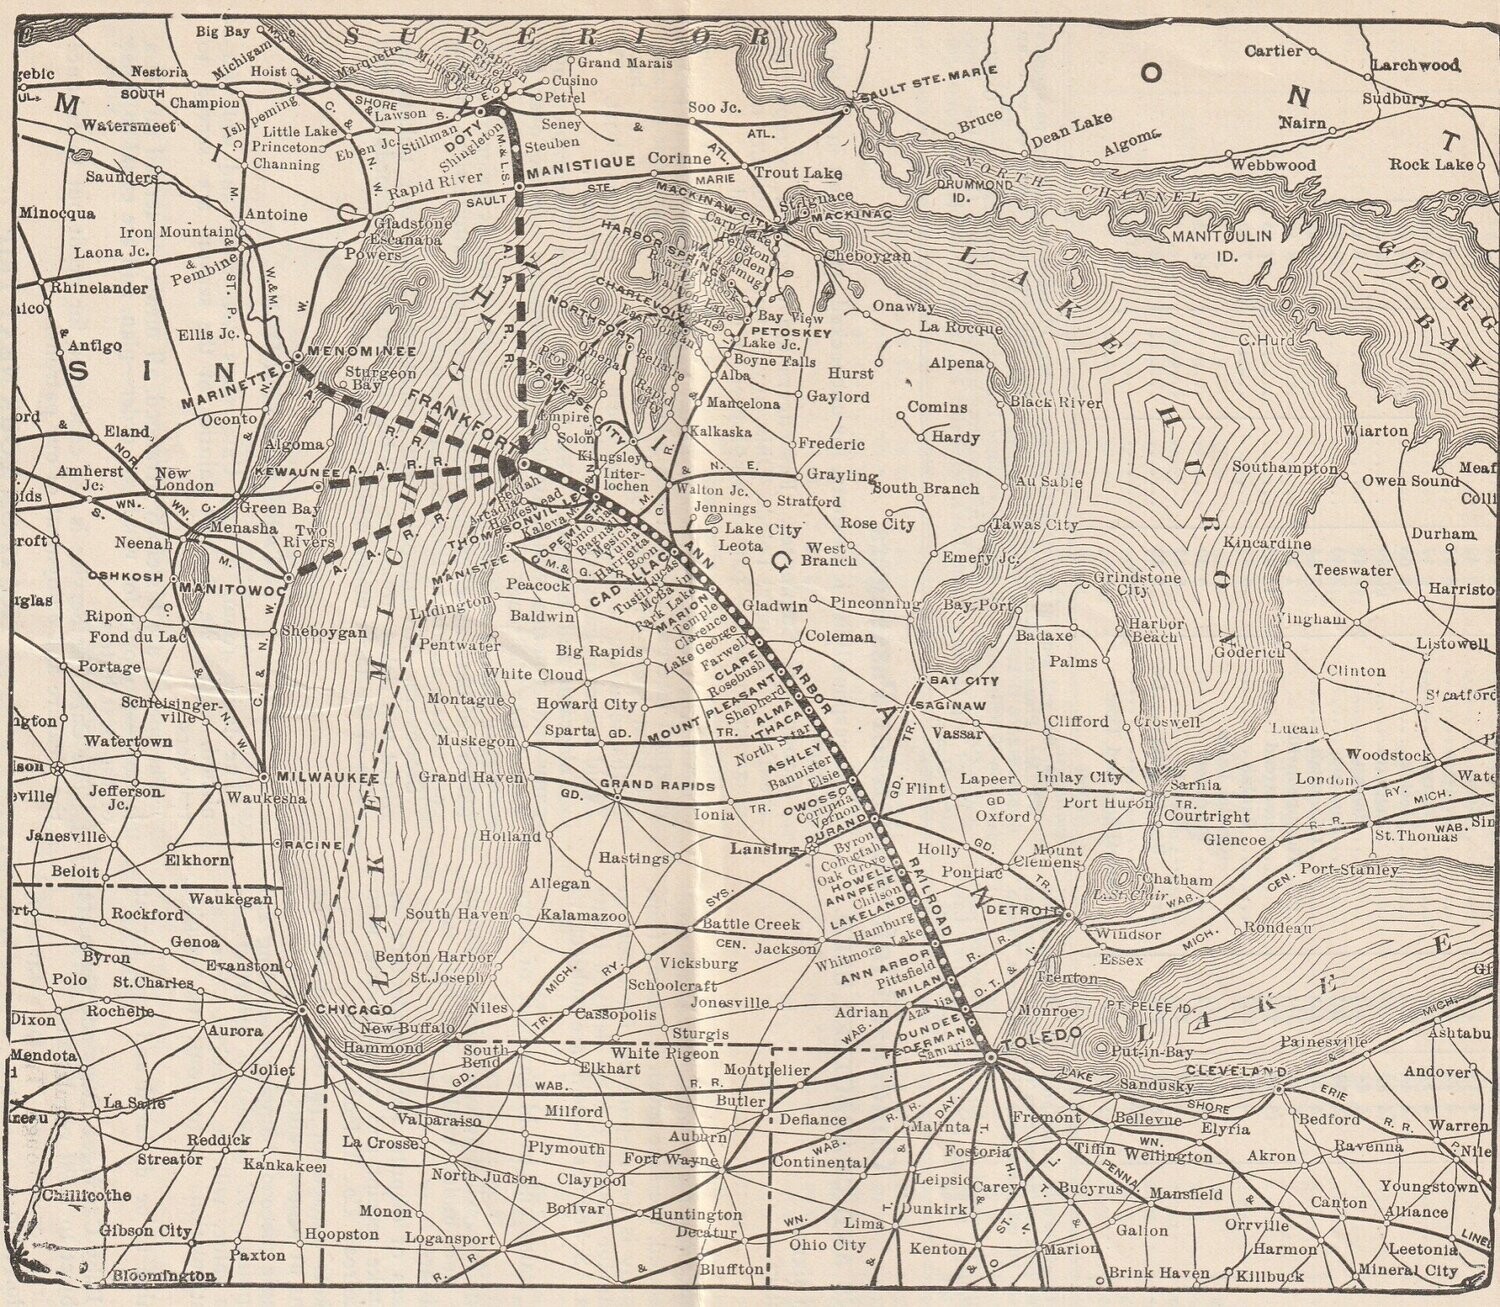 Ann Arbor RR Map 1925